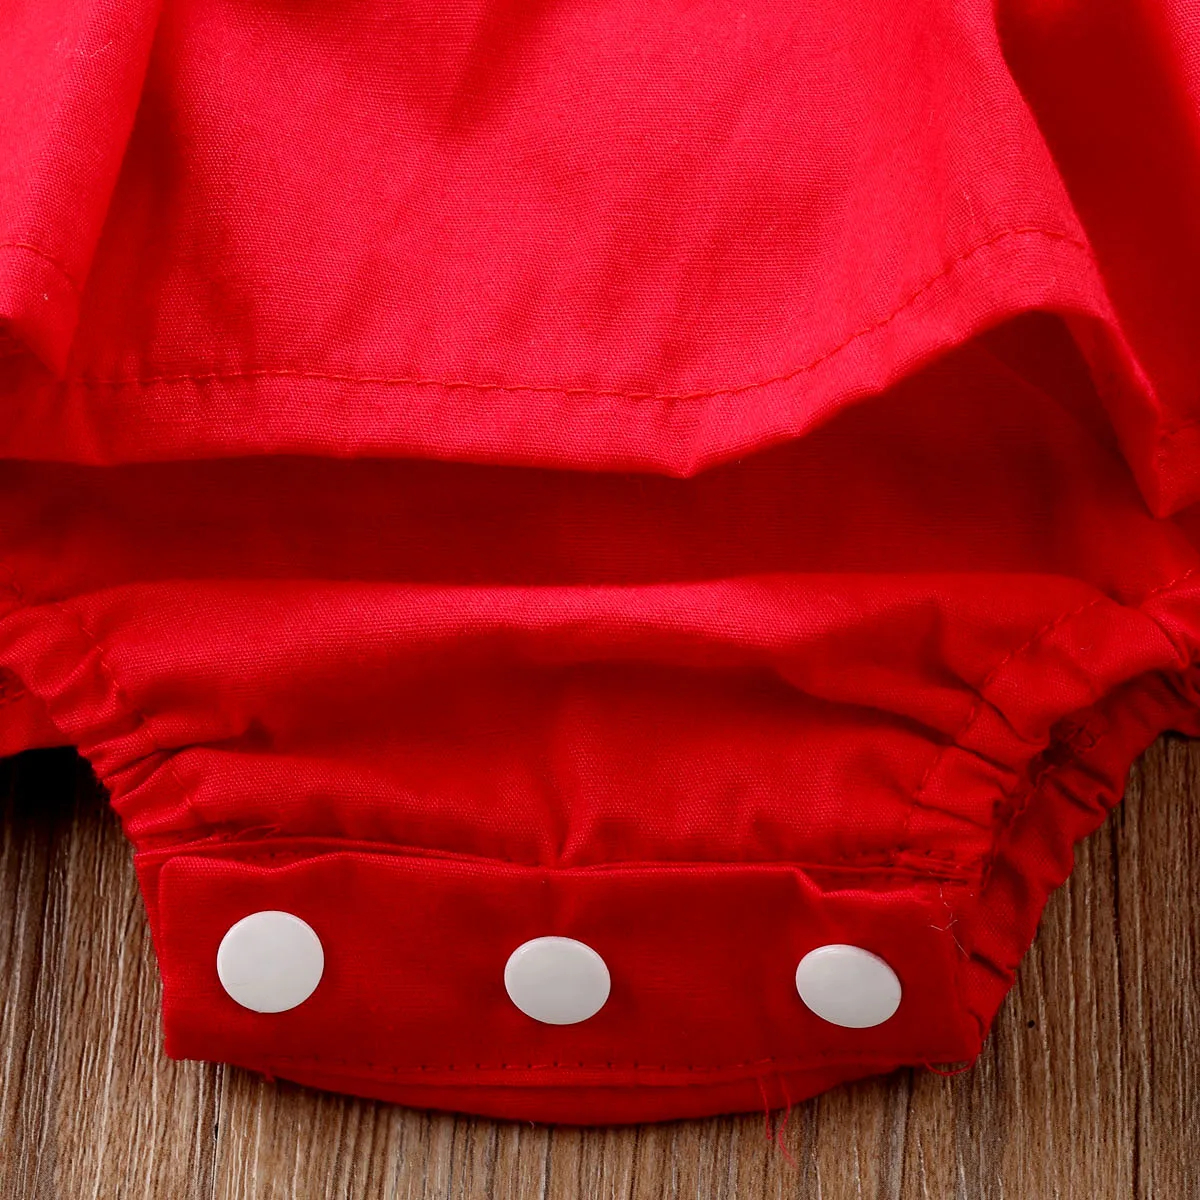 Arriavl Рождество рюшами Красный детское кружевное платье-комбинезон для маленьких девочек сестра принцесса Дети Рождество Платья для вечеринок хлопок костюм для новорожденного